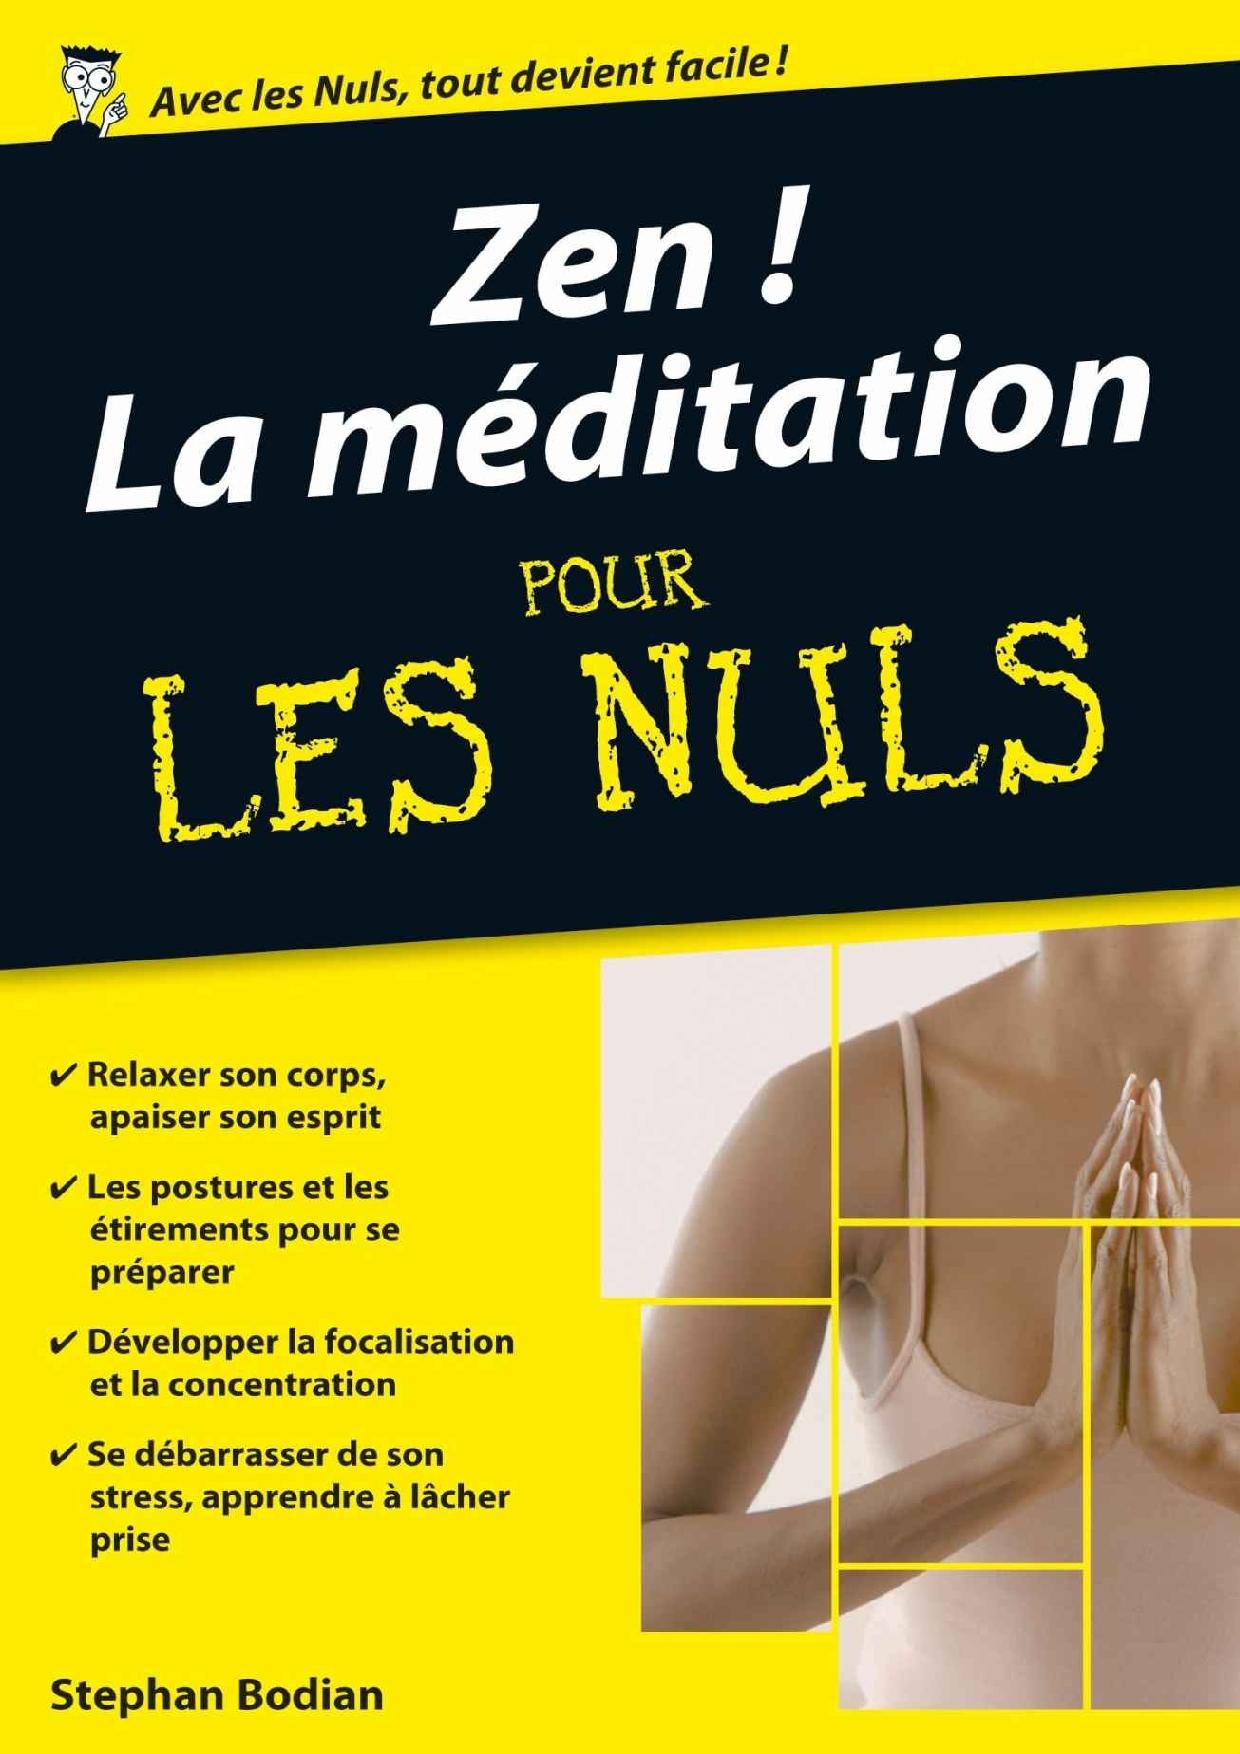 Méditation Pour Les Nuls Fabrice Midal Zen La méditation pour les nuls – Paroconseil